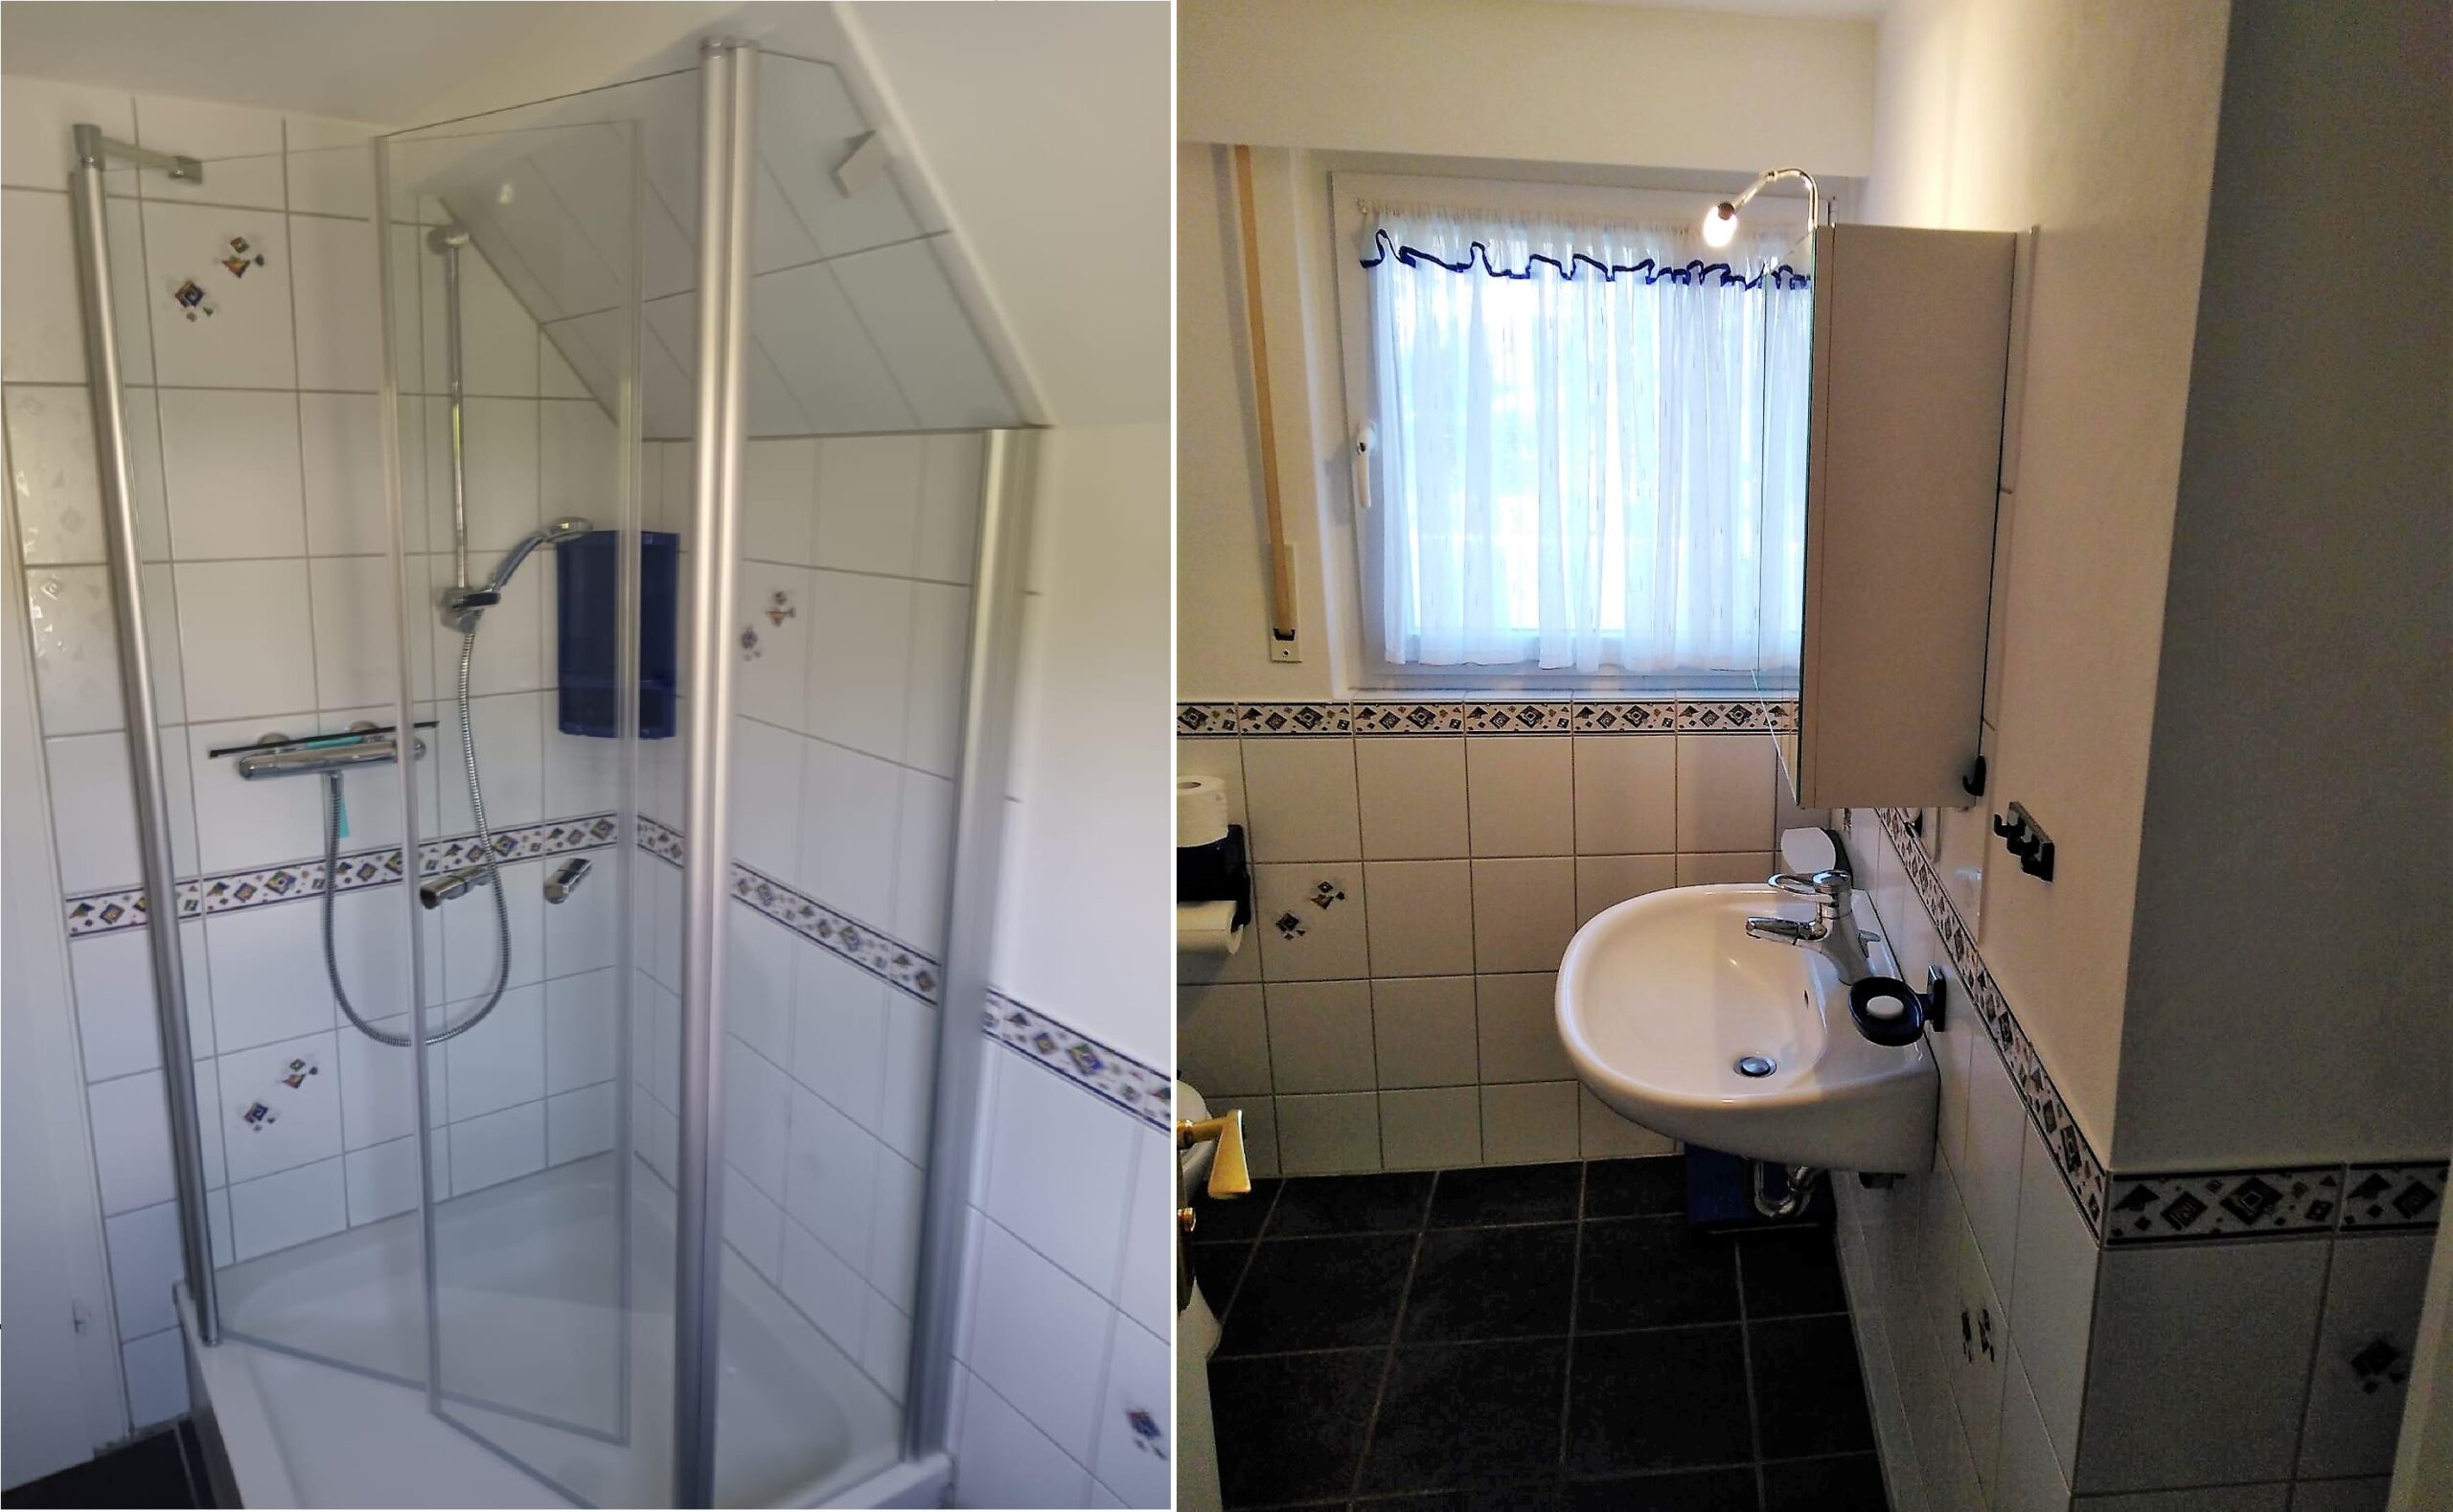 Badezimmer in der Feirienwohnung Volker Drews in Arnsberg (Sauerland)